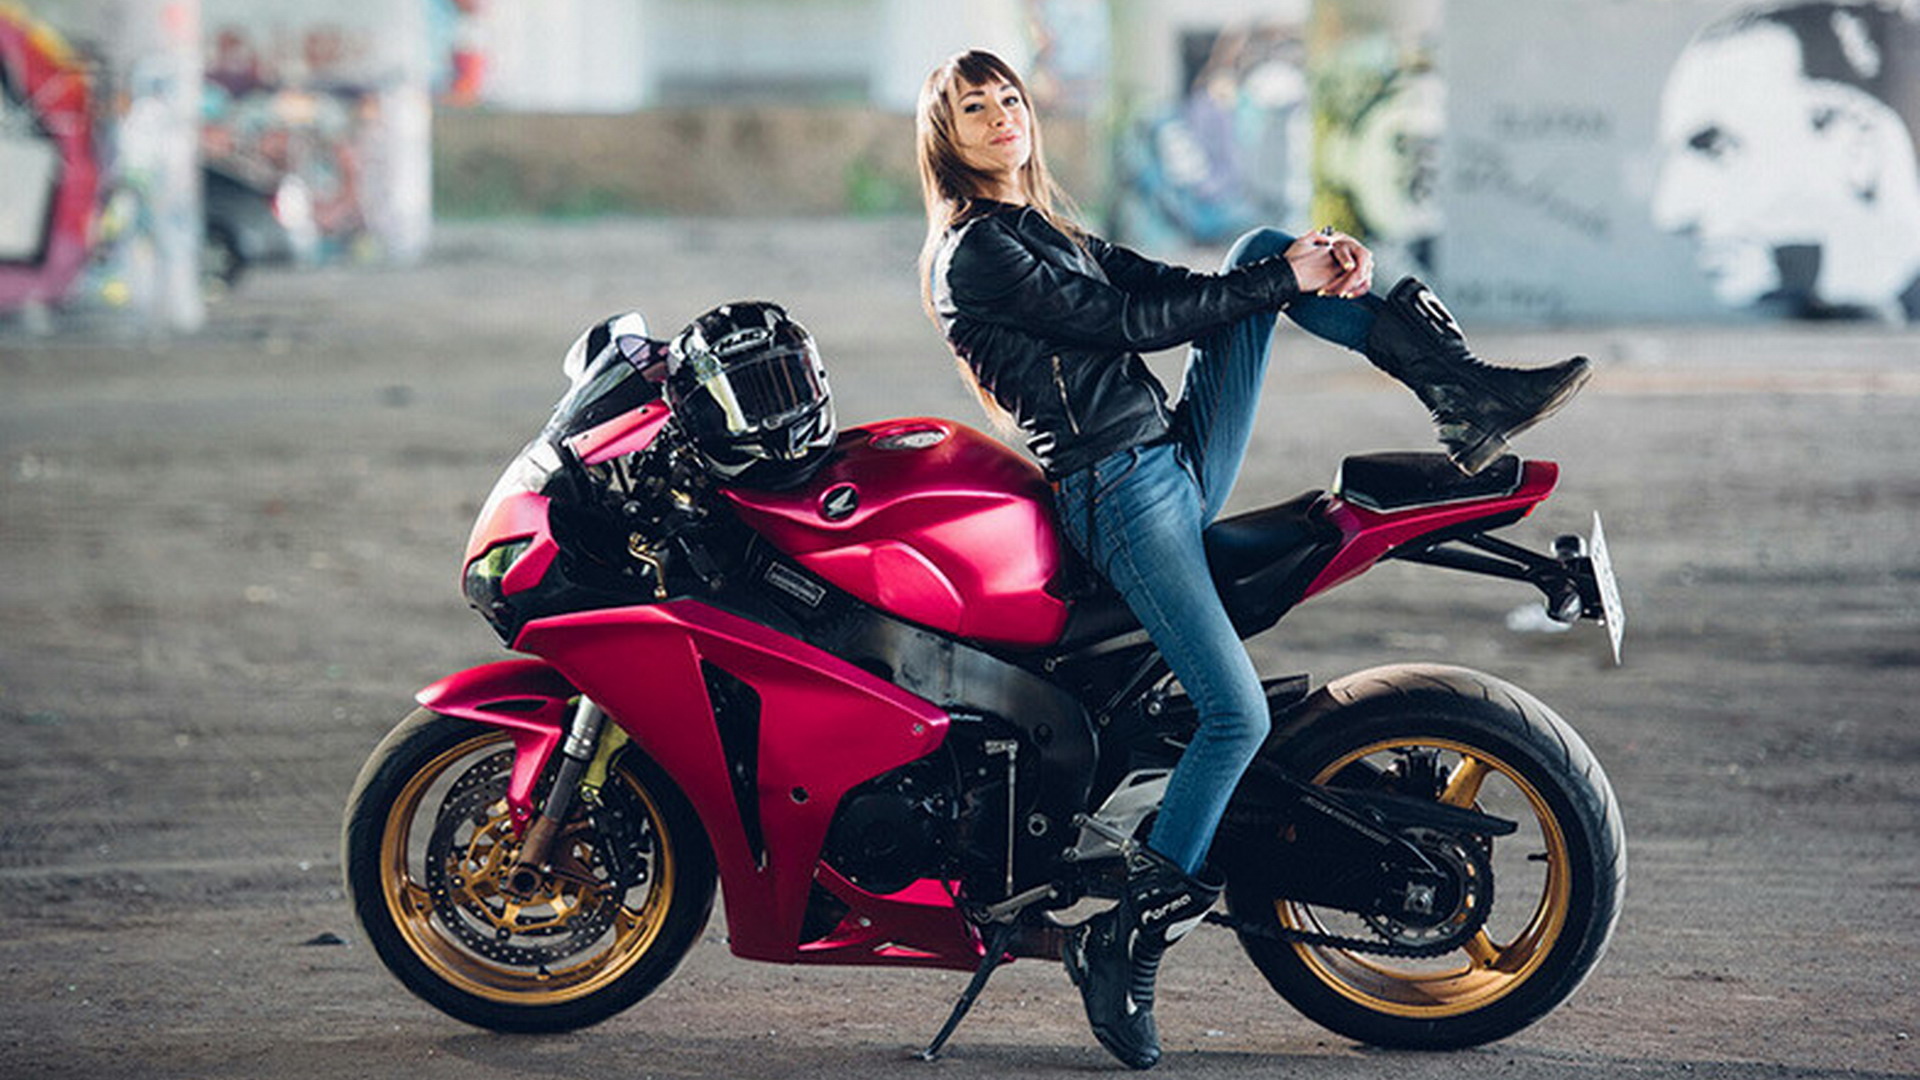 Про девушку на мотоцикле. Девушка на мотоцикле. Красивые девушки на мотоциклах. Леди на мотоцикле. Девушка на мотоцикле в шлеме.